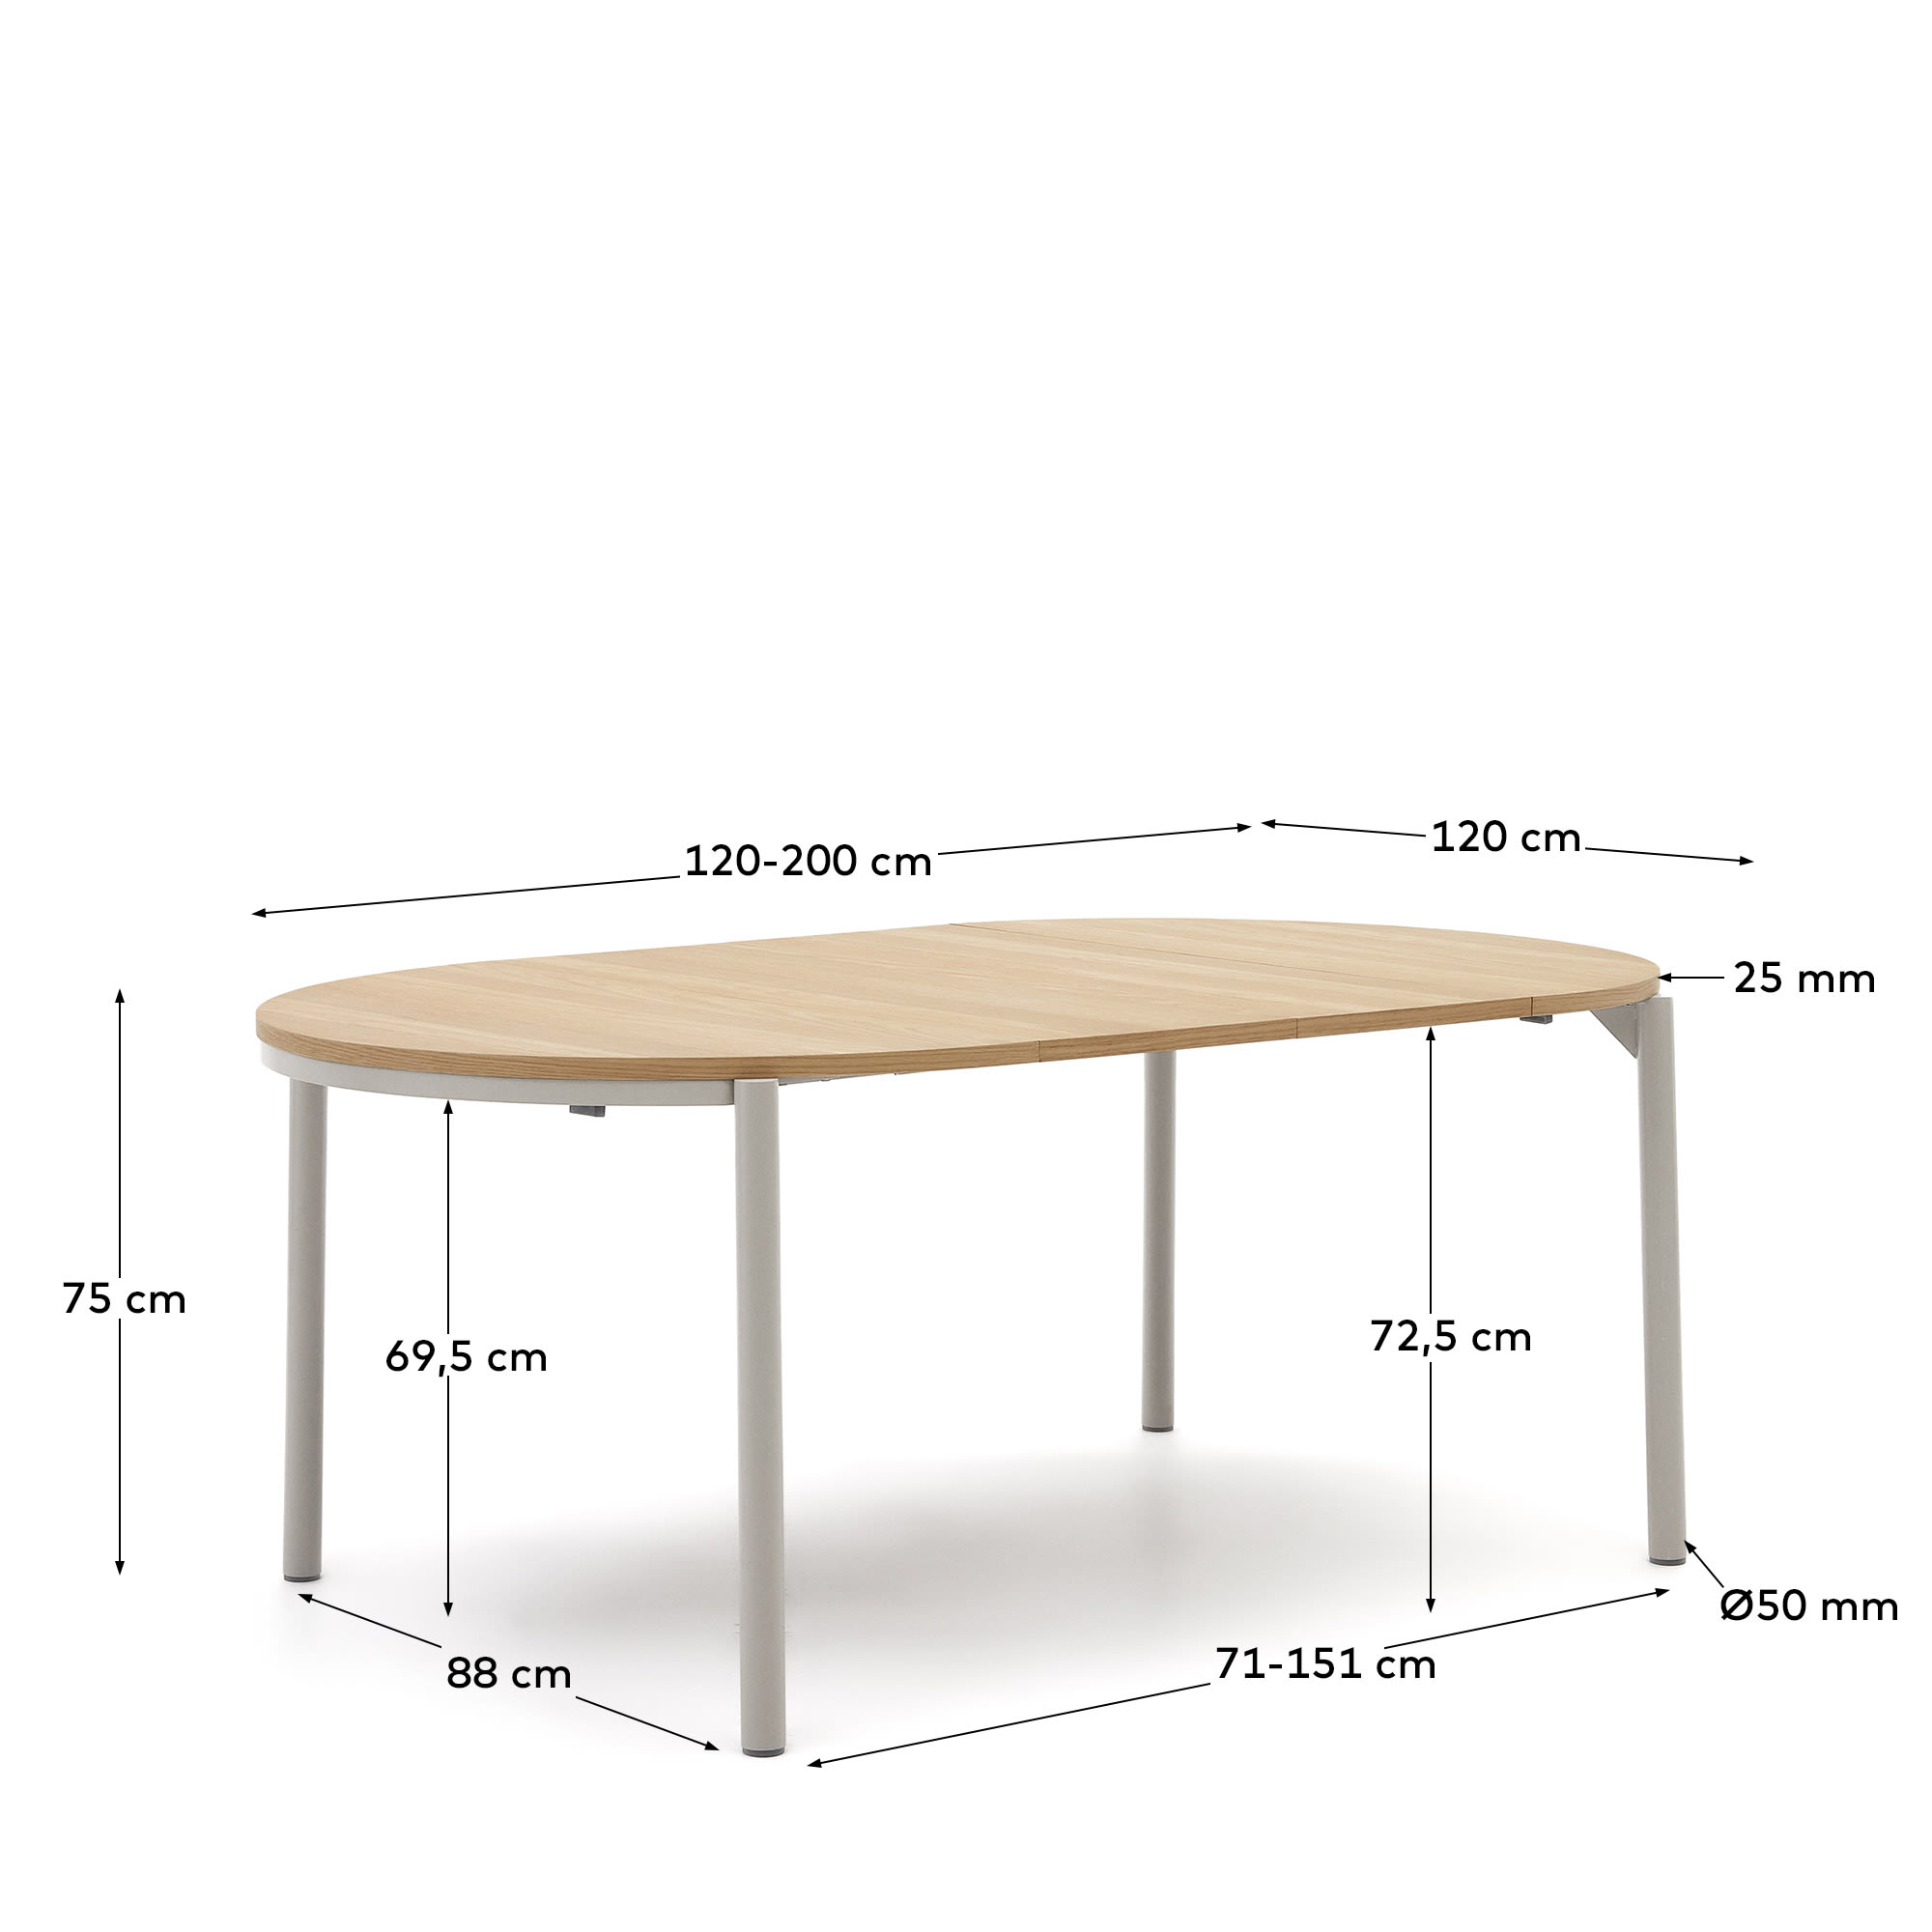 몬트리 오크 천연무늬목 정원형 확장 테이블 Ø 120 (200) cm - 크기